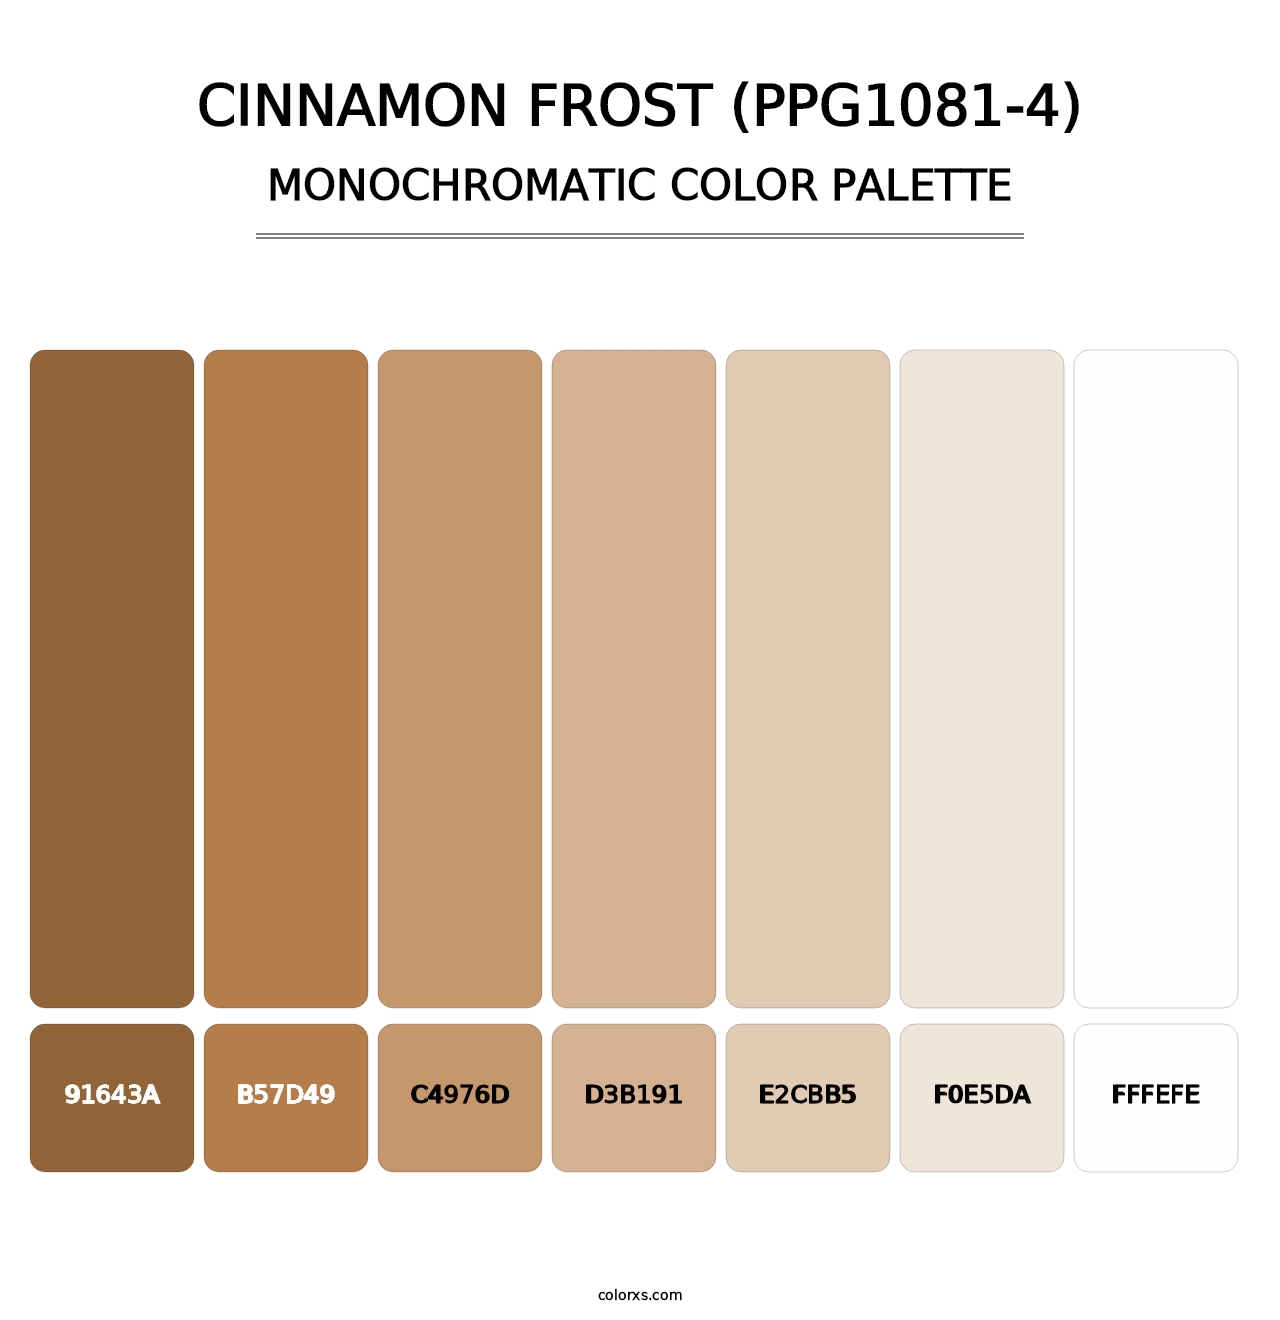 Cinnamon Frost (PPG1081-4) - Monochromatic Color Palette